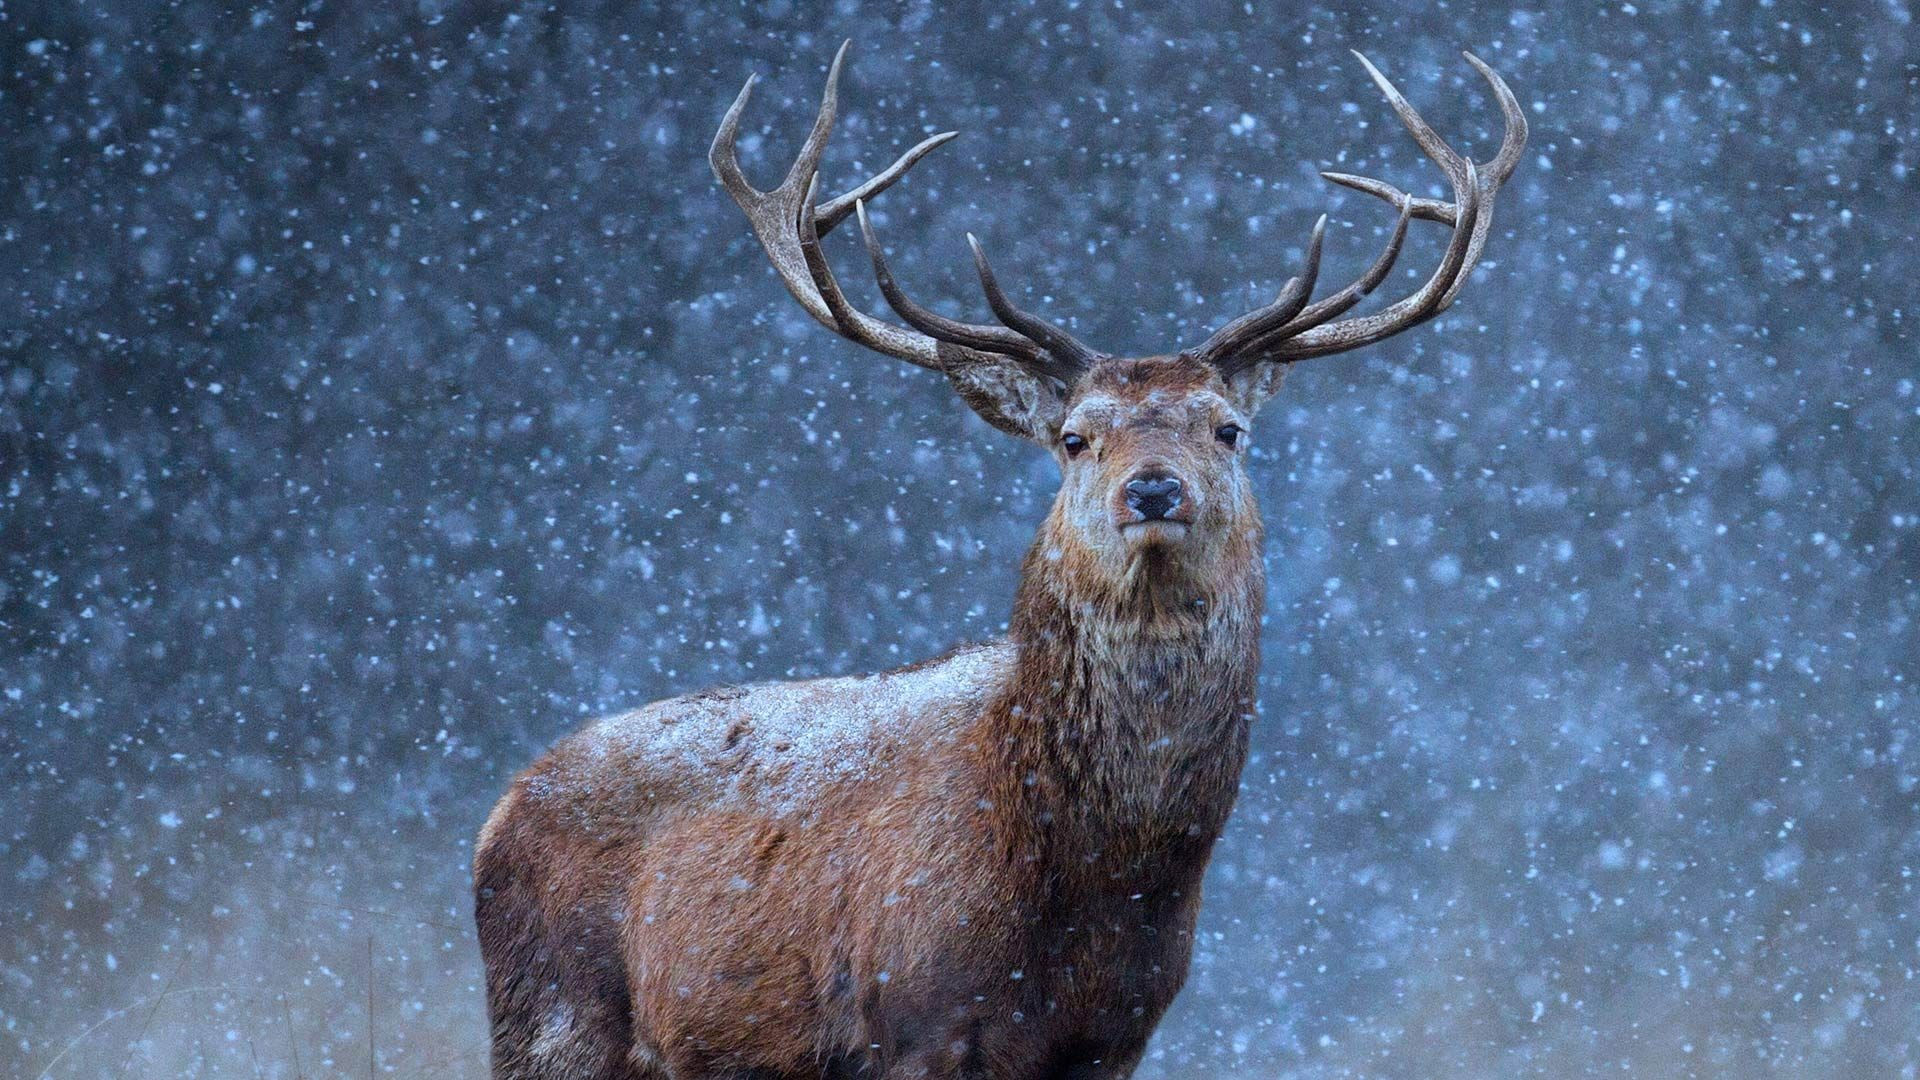 1920x1080 Image: Beautiful Deer in Snow Desktop Wallpaper